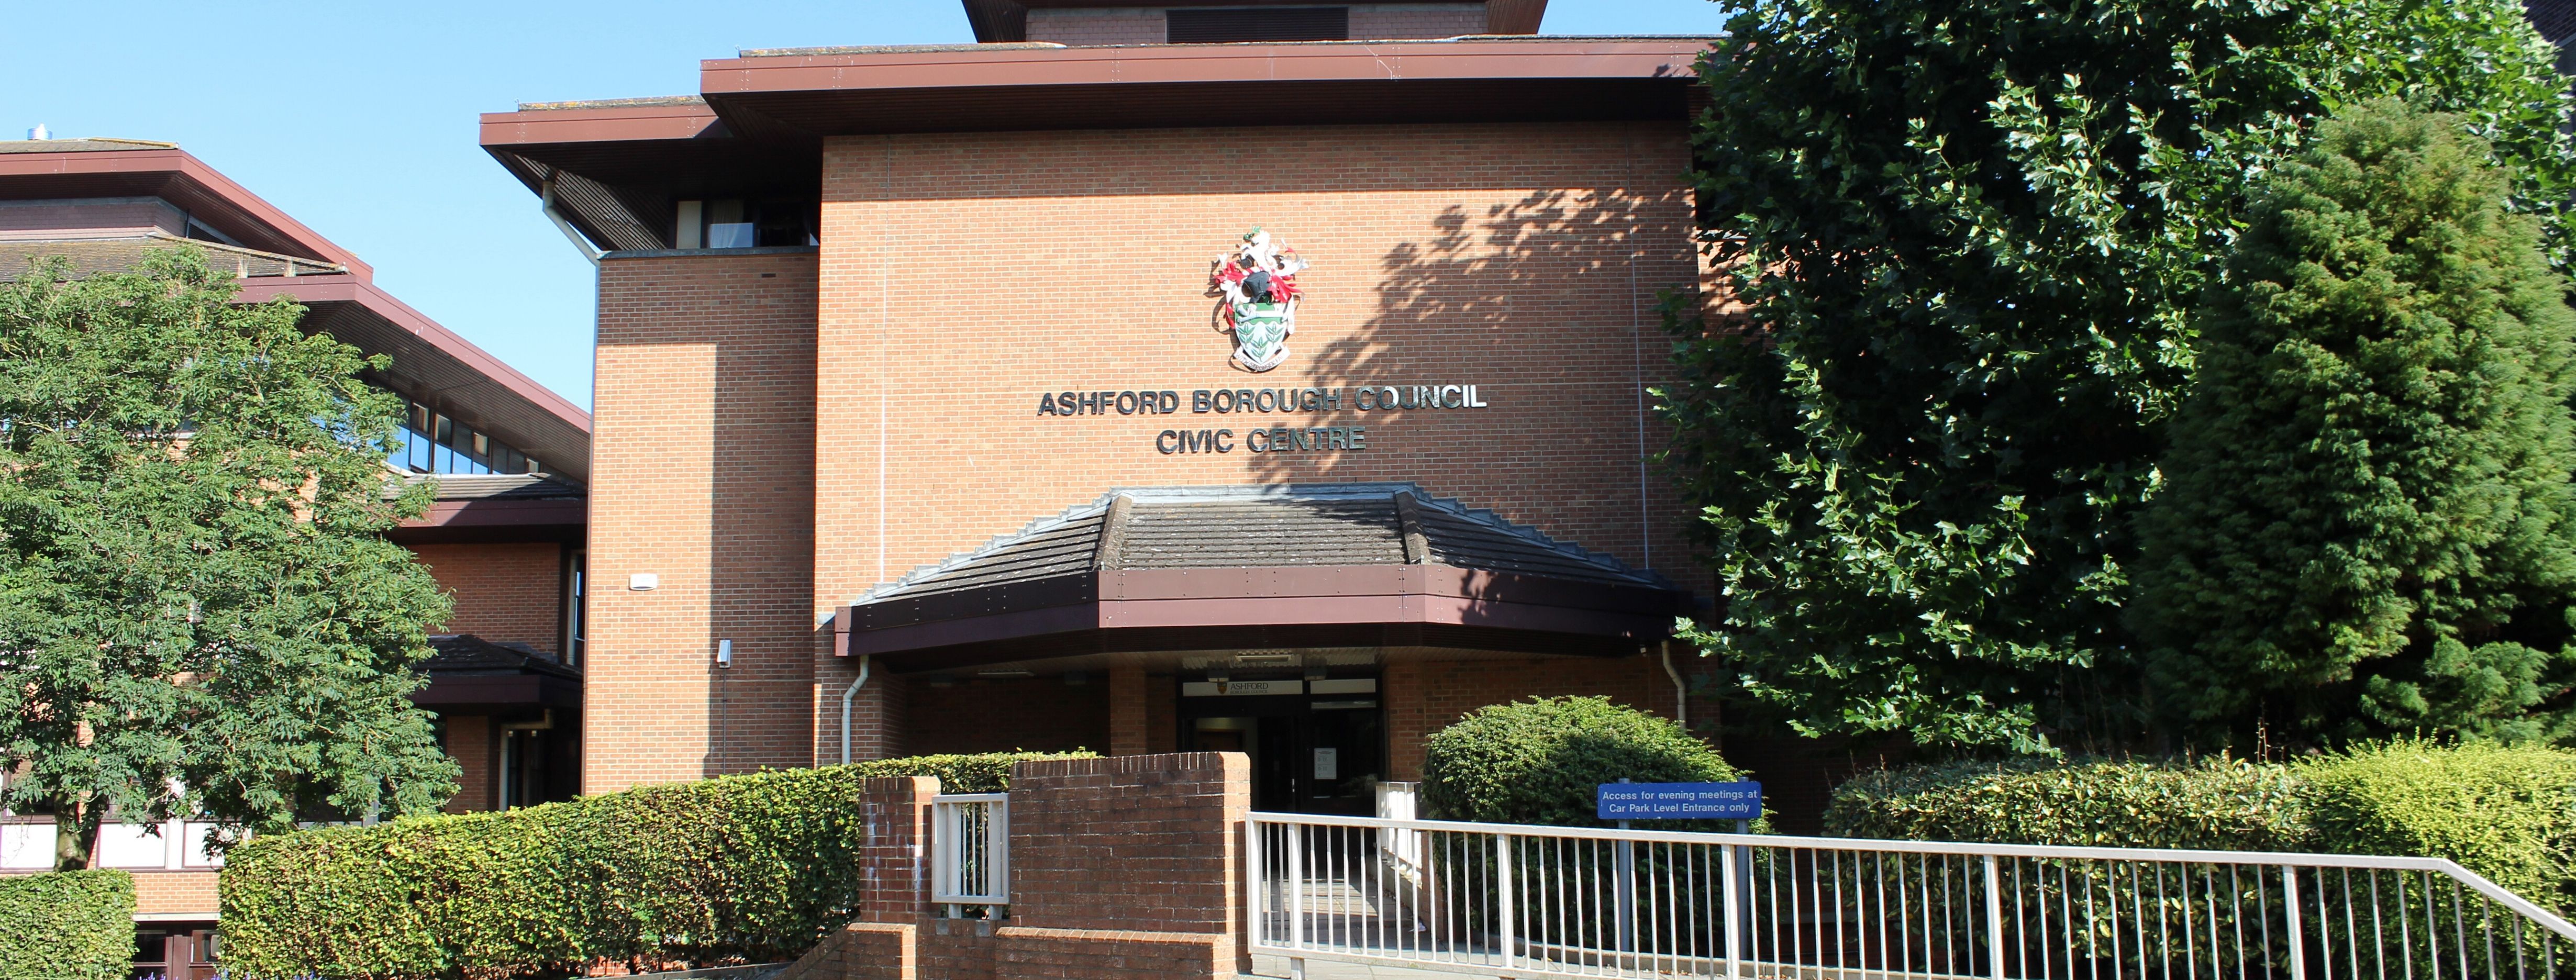 Ashford Borough Council Civic Centre